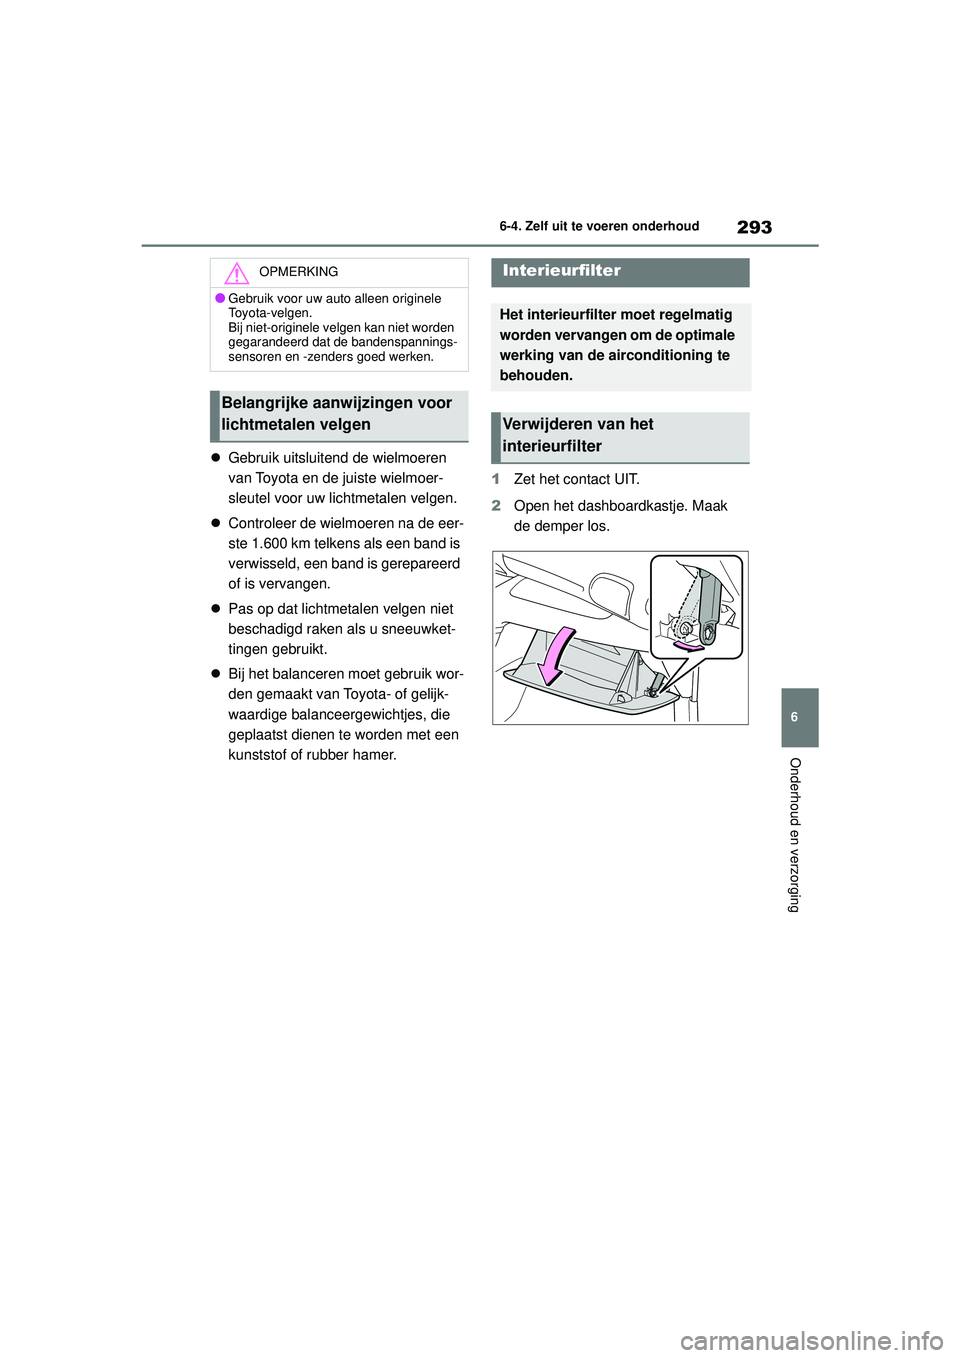 TOYOTA GR YARIS 2020  Instructieboekje (in Dutch) 293
6
YARIS(GR) handleiding_Europa_M52L09_nl
6-4. Zelf uit te voeren onderhoud
Onderhoud en verzorging
Gebruik uitsluitend de wielmoeren 
van Toyota en de juiste wielmoer-
sleutel voor uw lichtmeta